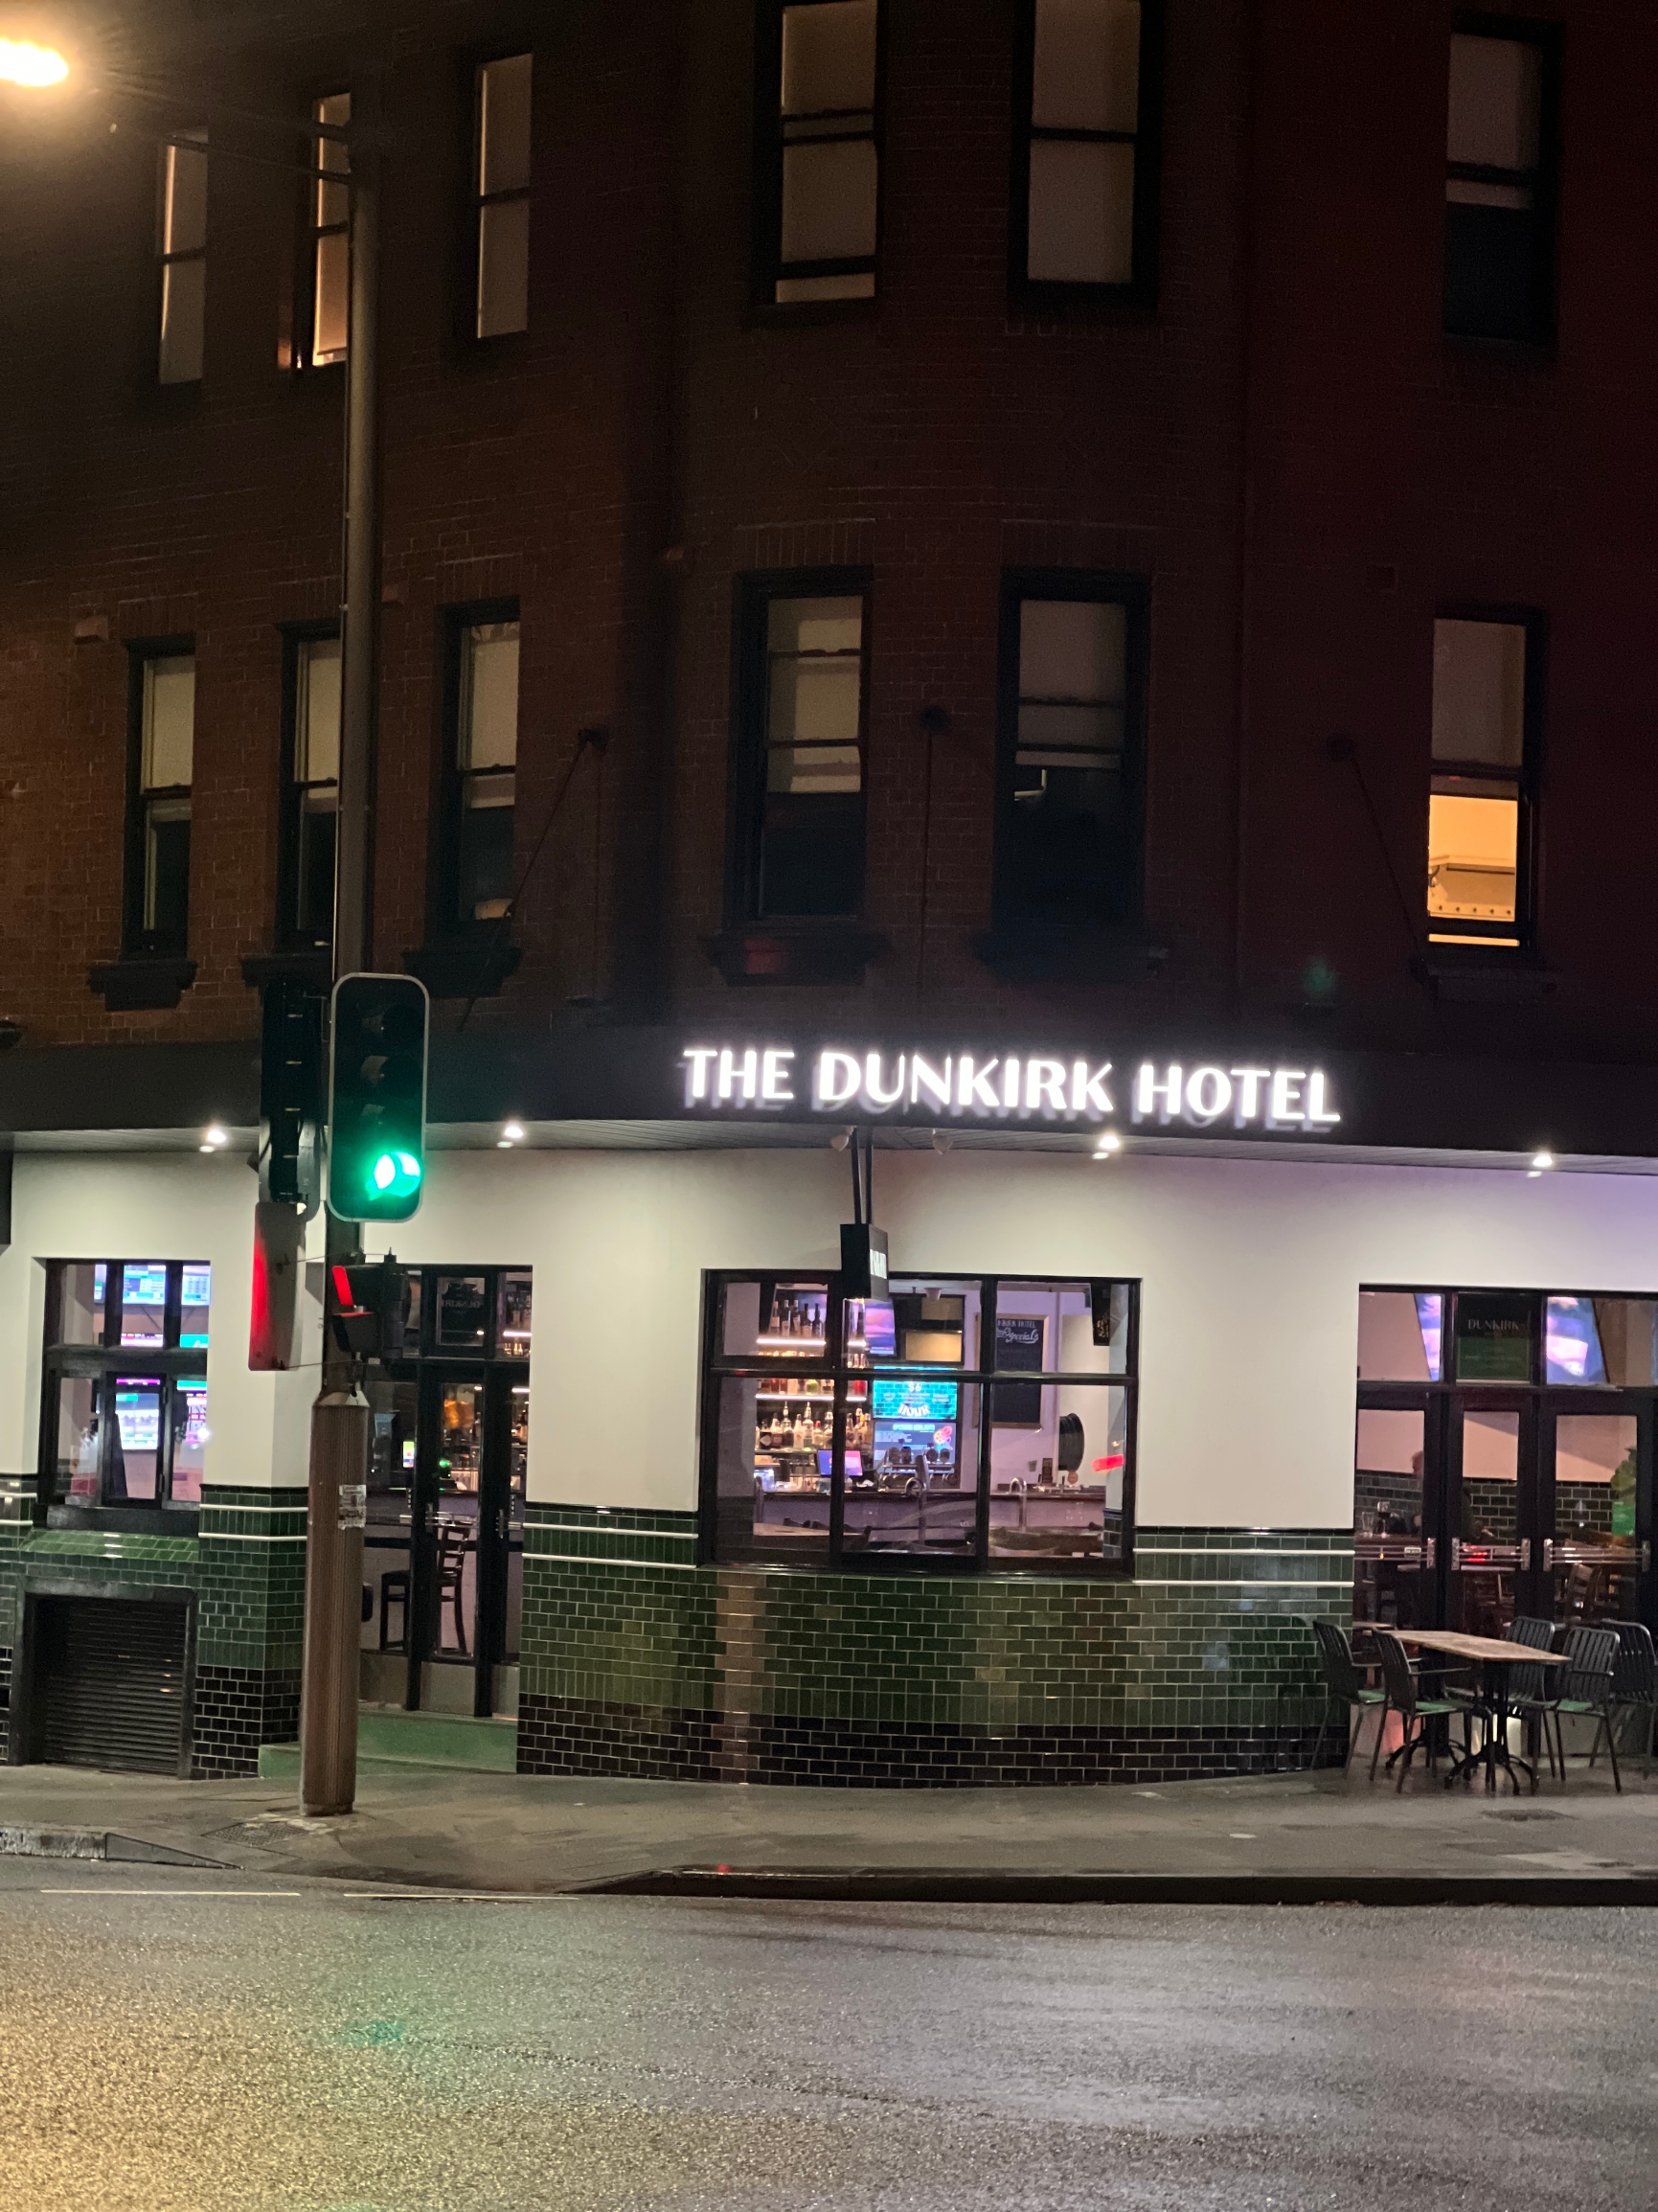 我入住了 Dunkirk Hotel，这是一次非常愉快的体验。酒店的工作人员非常热情友好，一进门就给